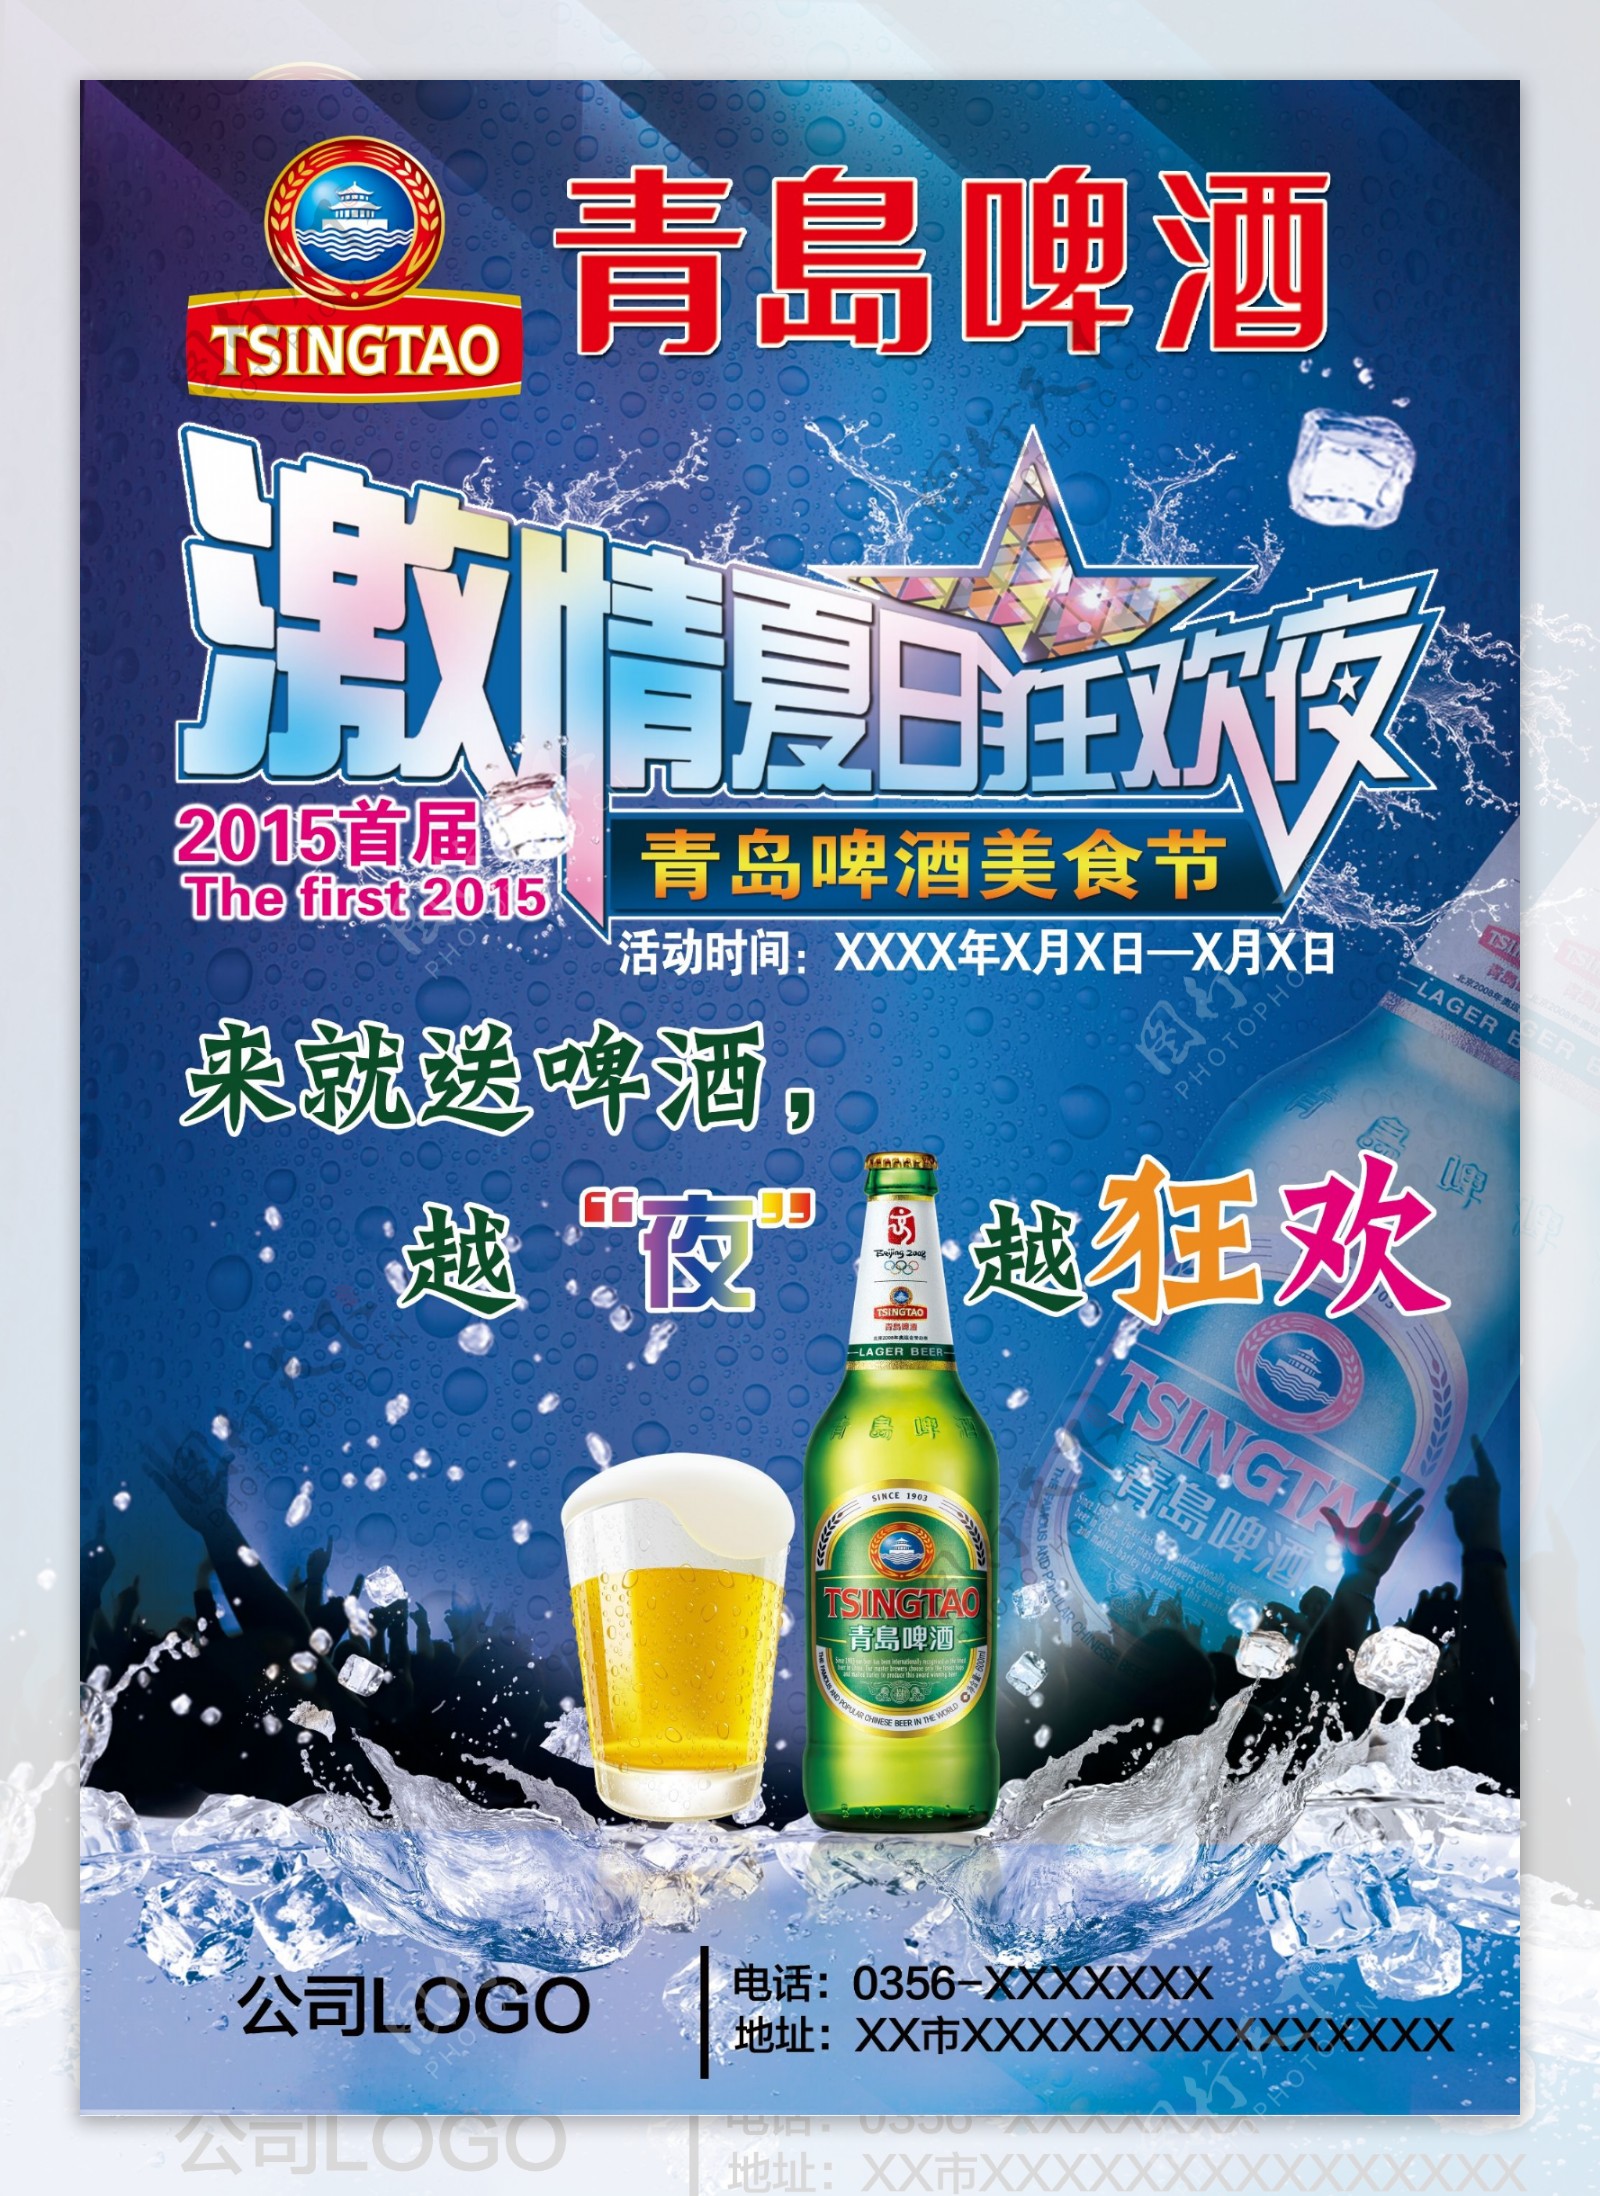 激情夏日狂欢夜啤酒节海报